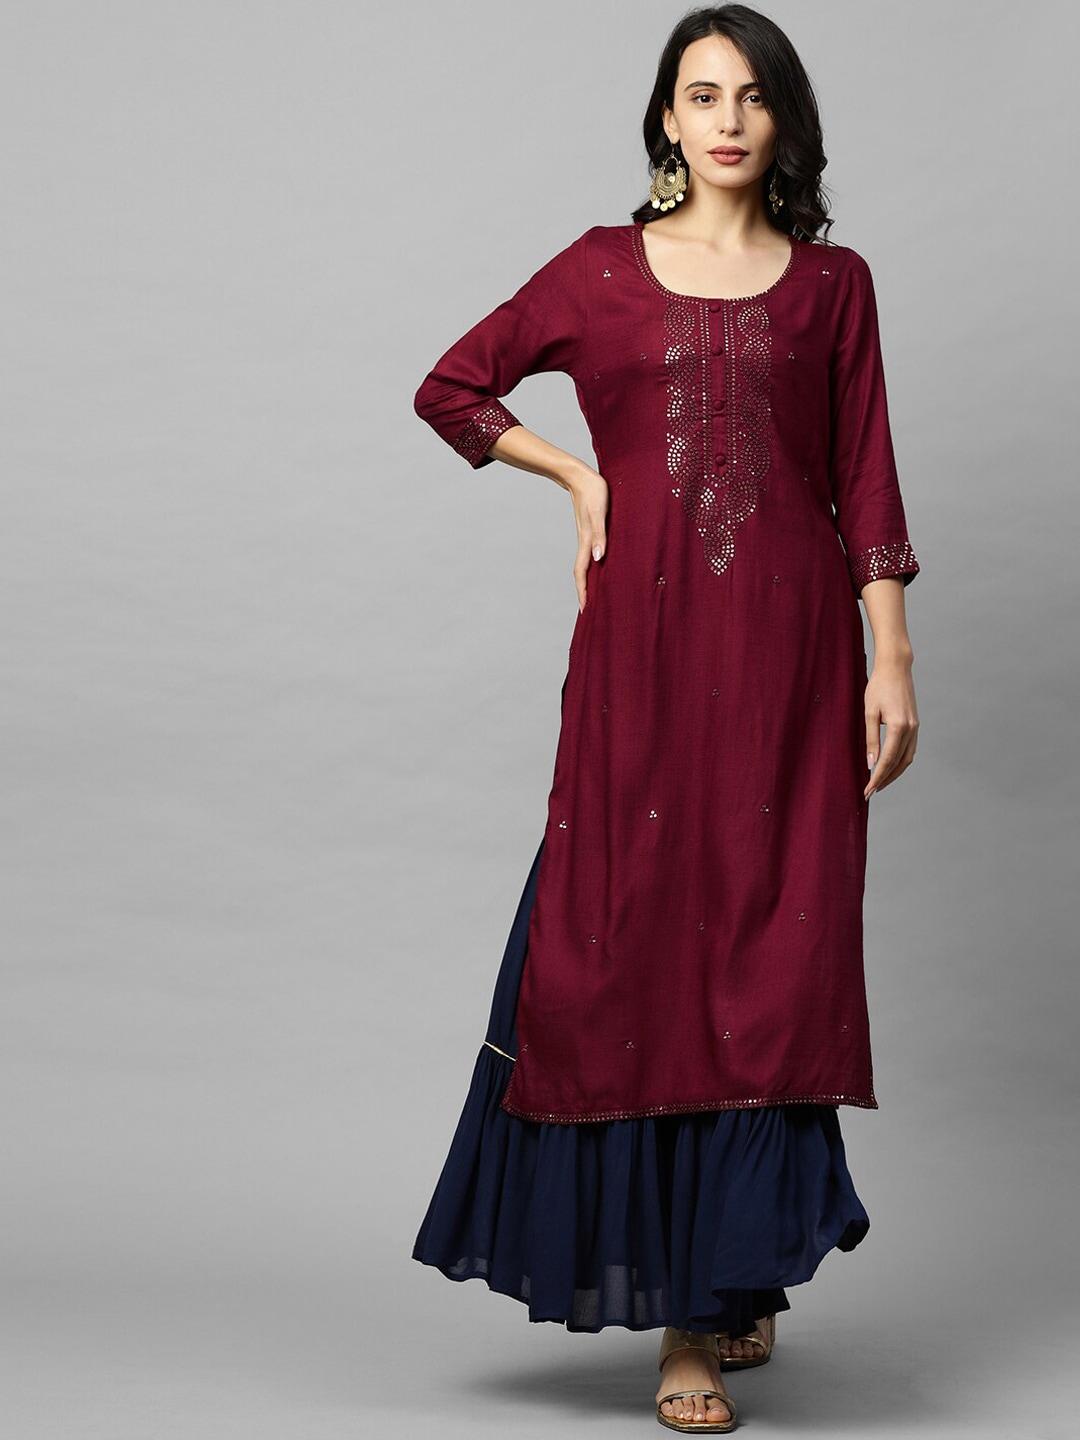 fashor-burgundy-yoke-design-embellished-kurta